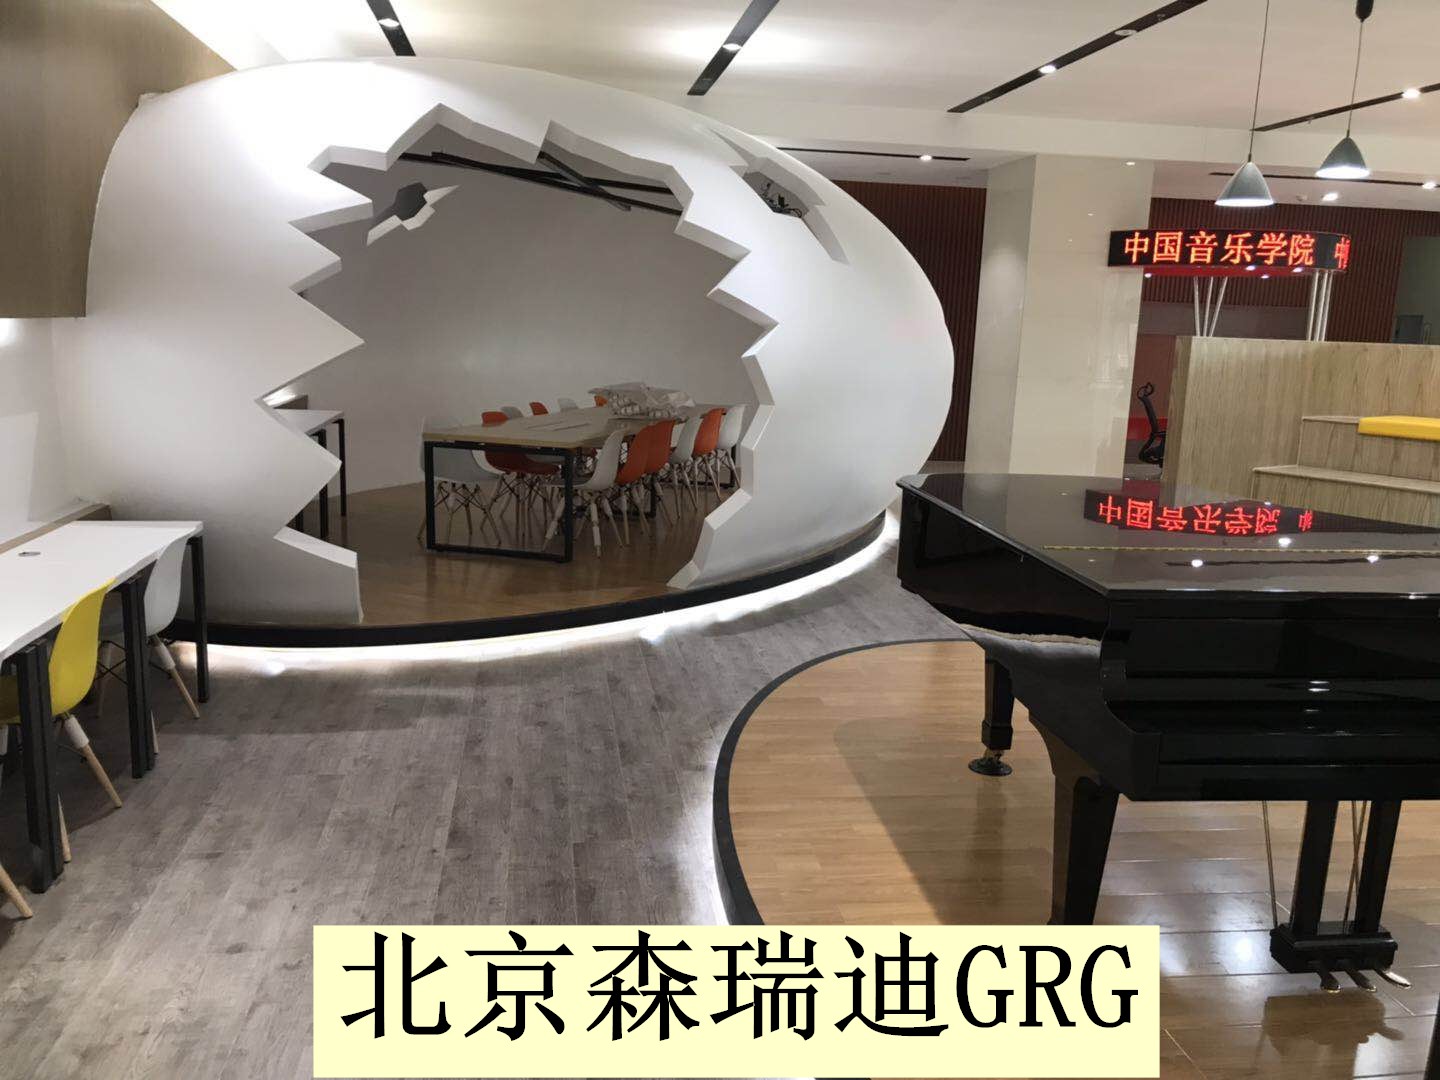 北京GRG造型构件厂家GRG天花构件 GRG造型构件 GRG造型构件厂家 北京GRG造型构件厂家